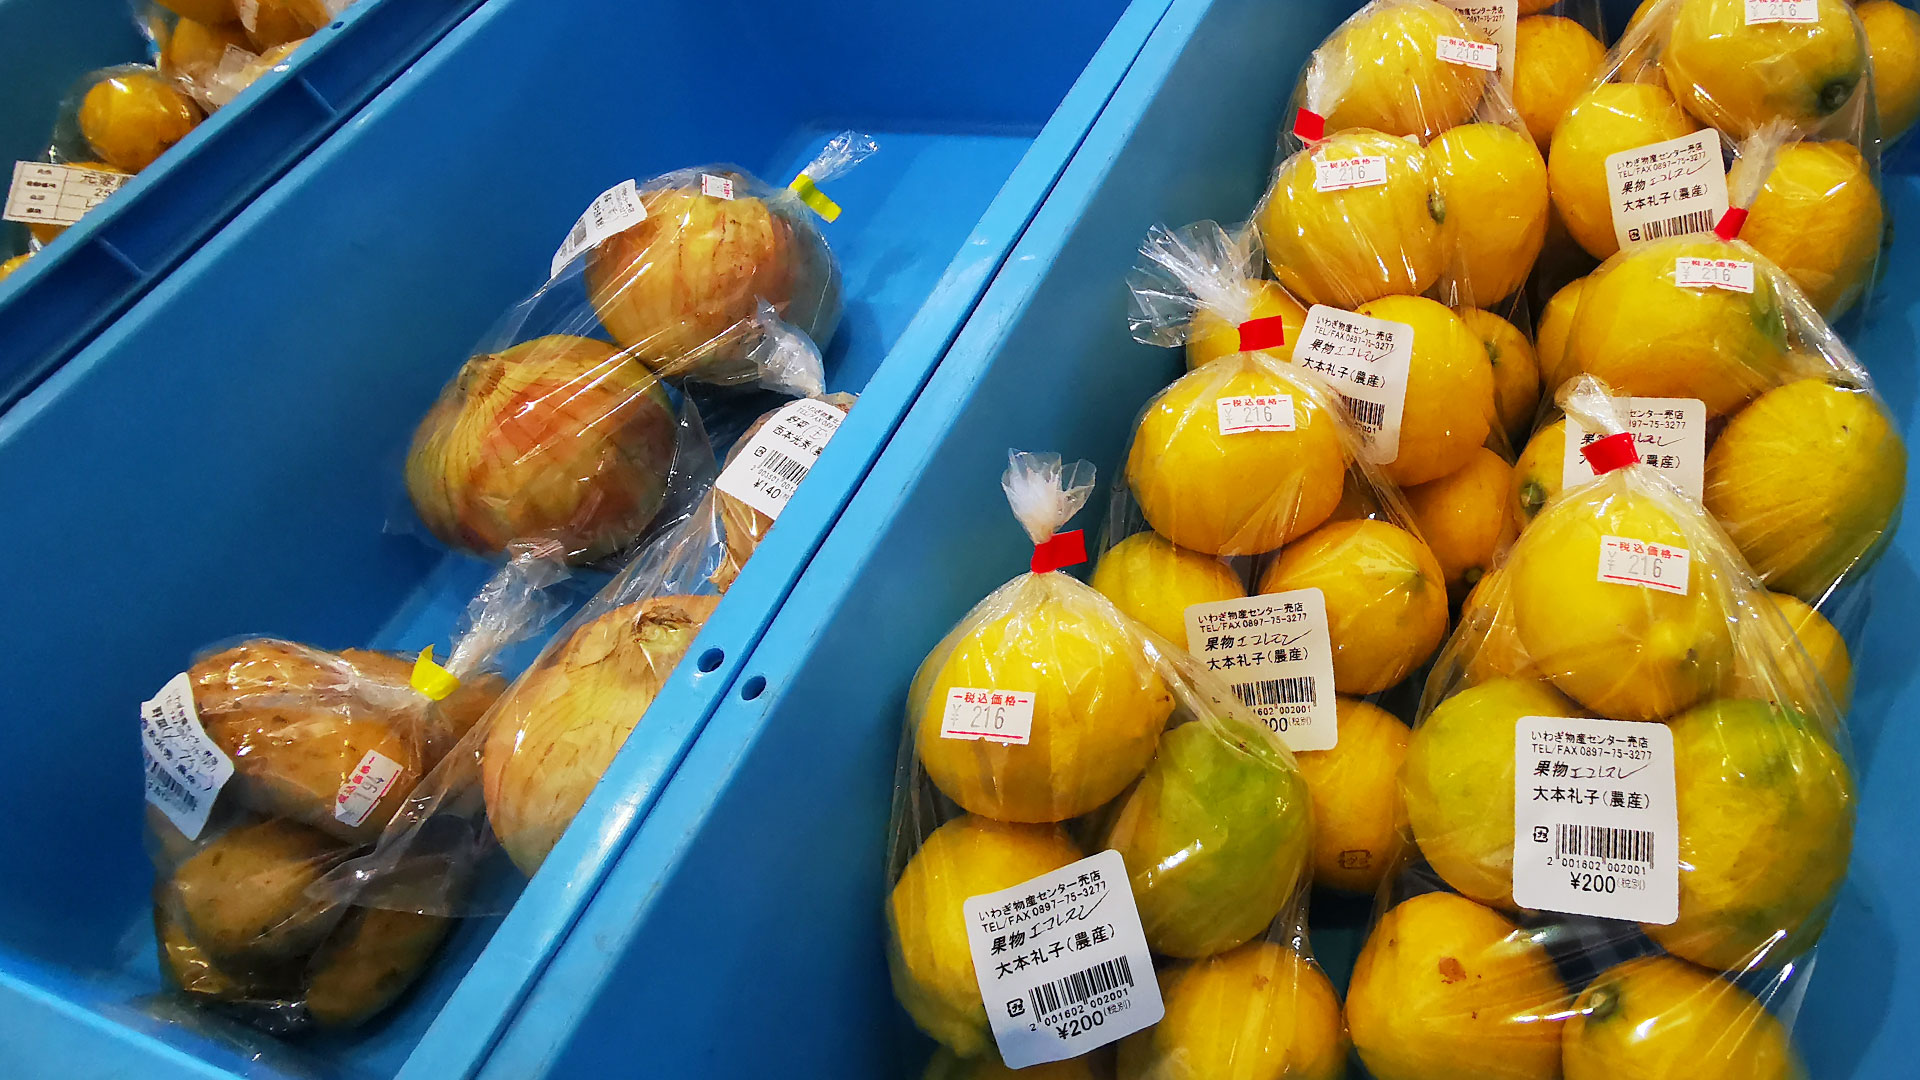 買ってきたレモンをそのまま皮ごと食べても安全で美味しいと評判になり、産地である岩城島が「青いレモン島」と呼ばれるようになりました。